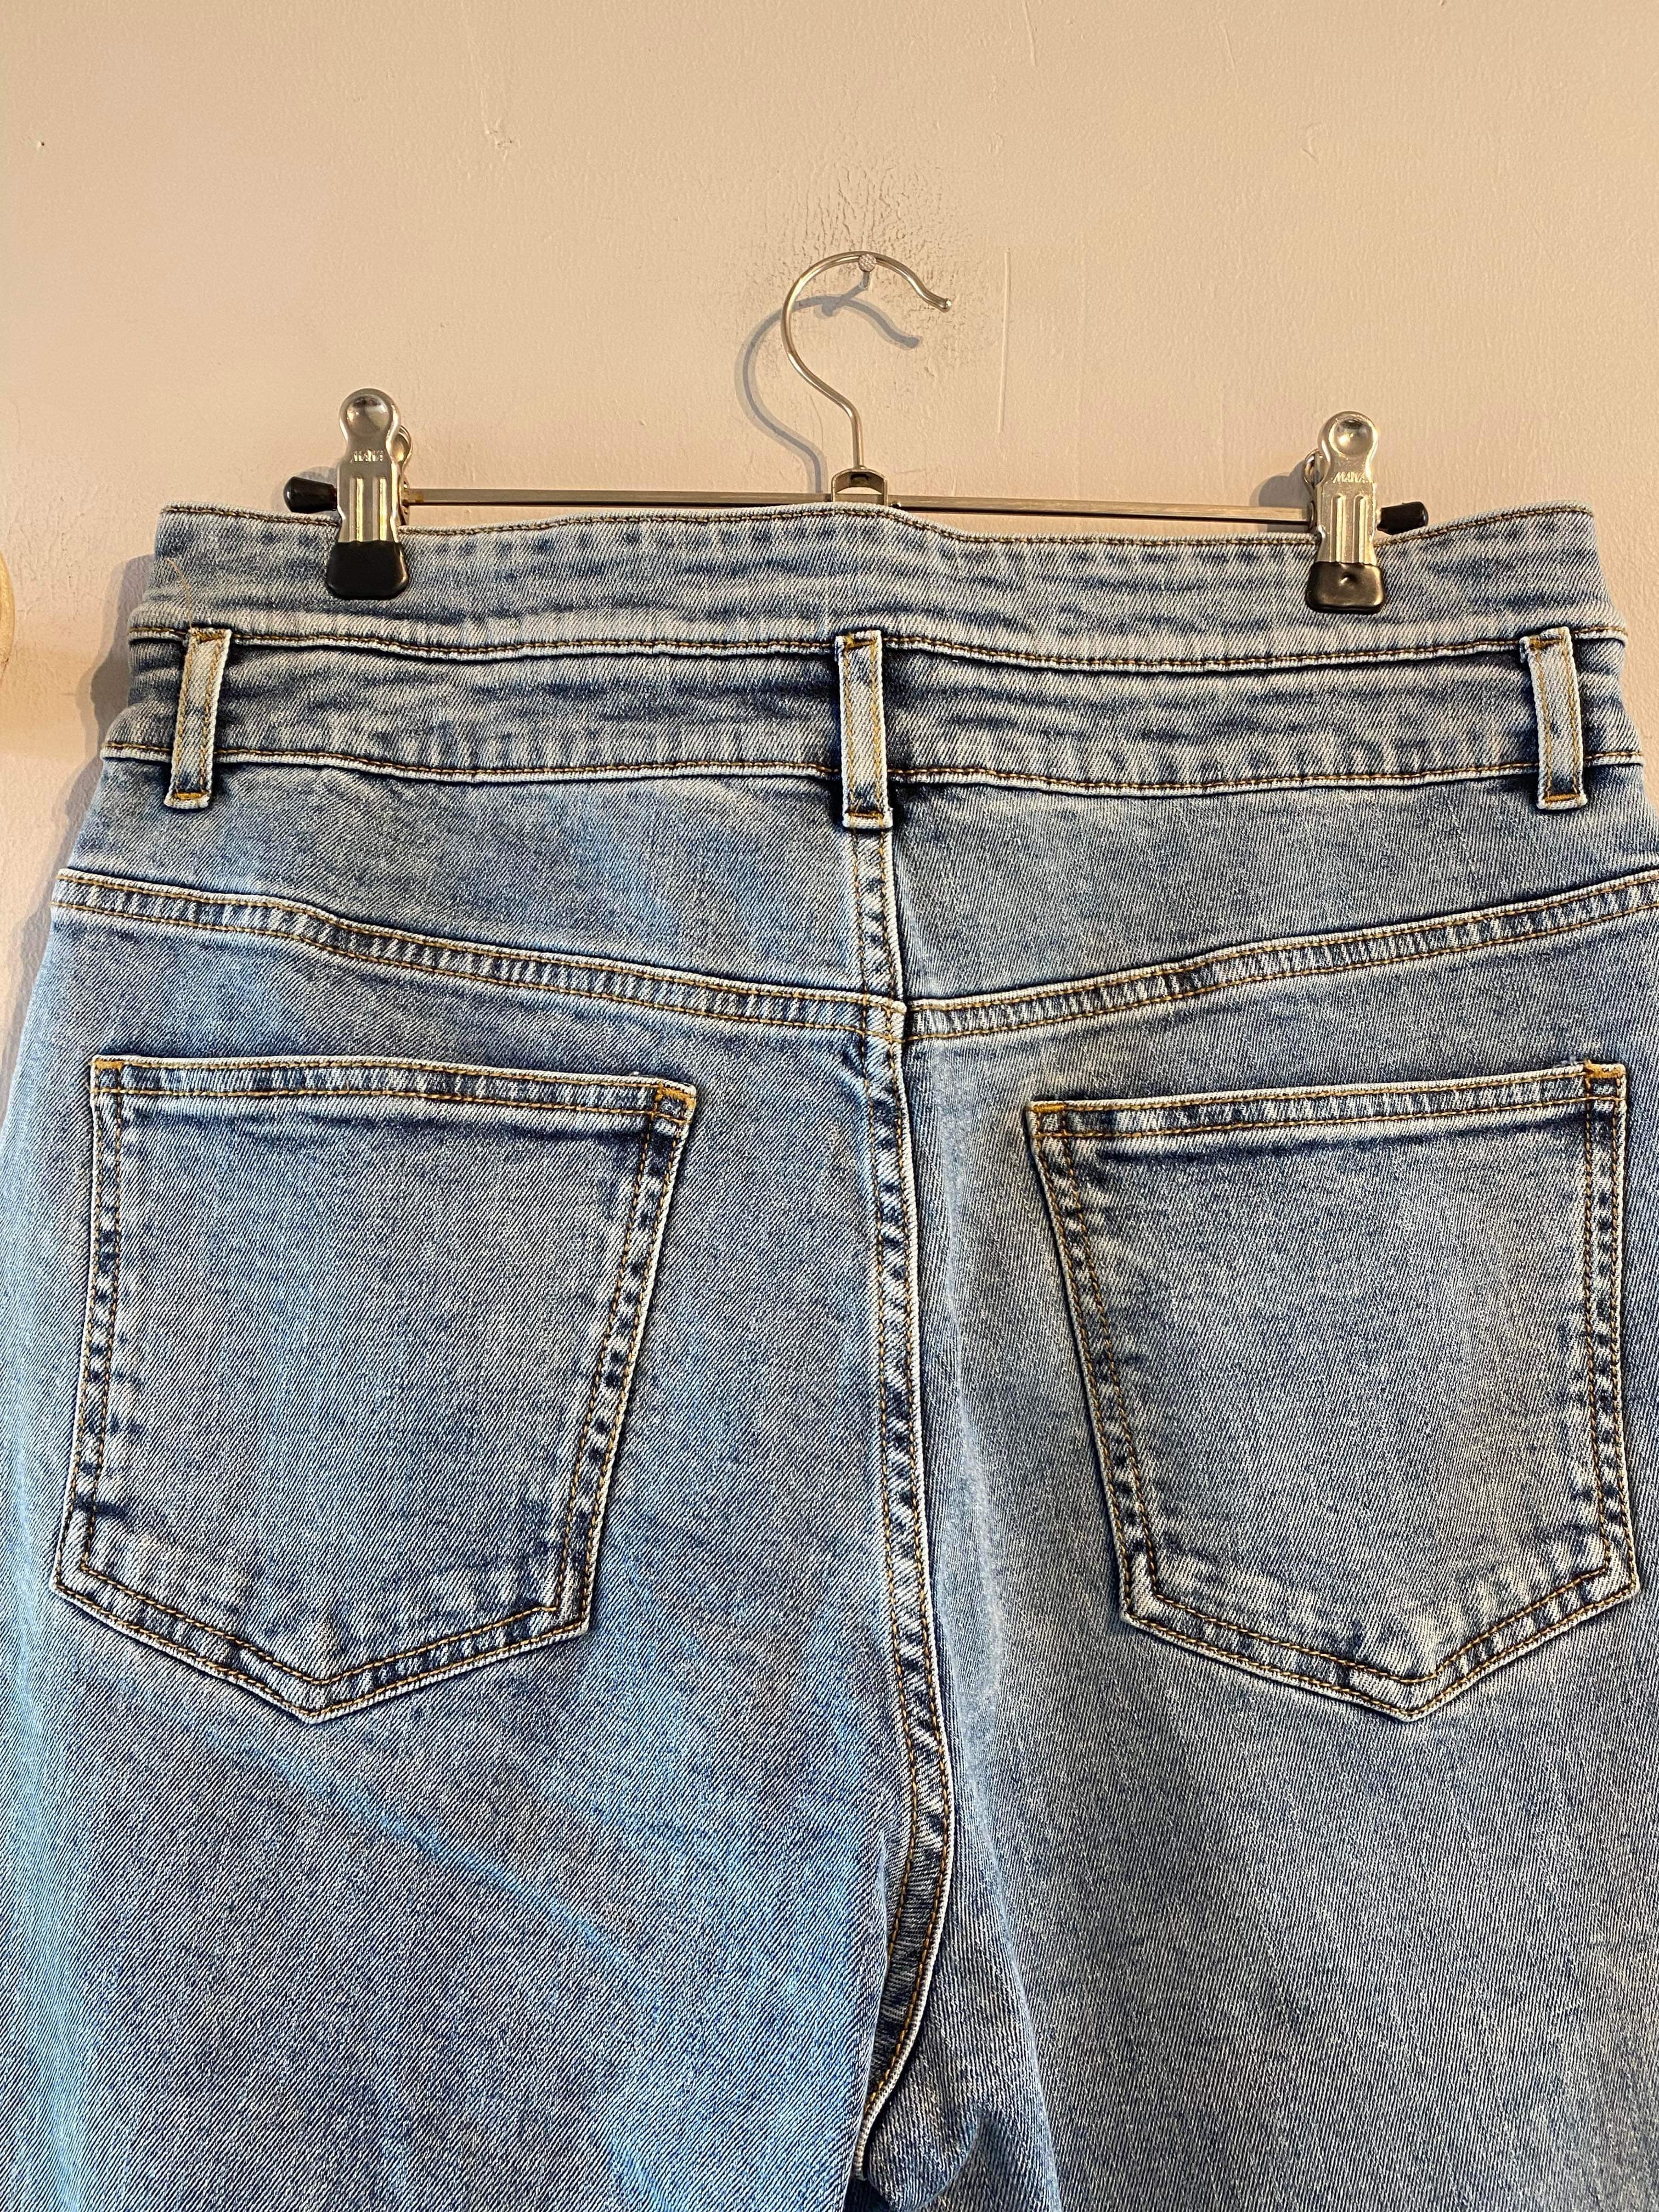 Lollys Laundry - Jeans - Size: M